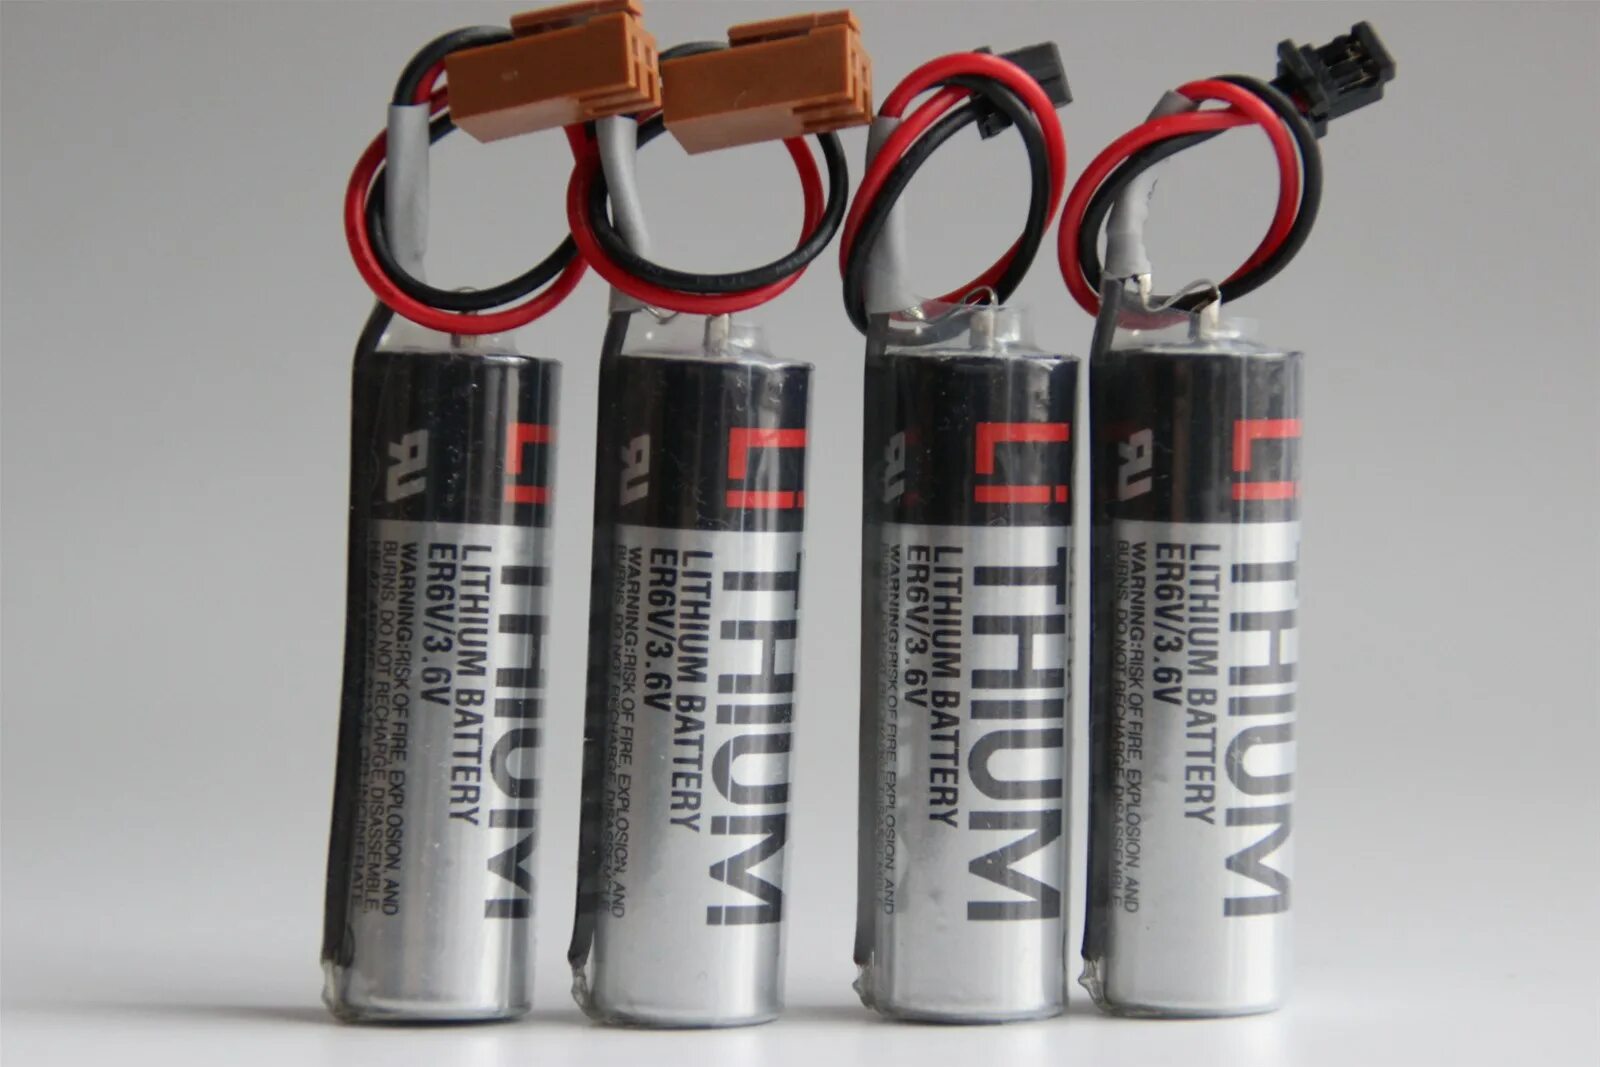 3v battery. Er3v/3.6v Lithium Battery. Toshiba Ultra Lithium Battery er6v/3.6v. Тошиба батарейки 3v 1000ma. Er3v/3.6v.